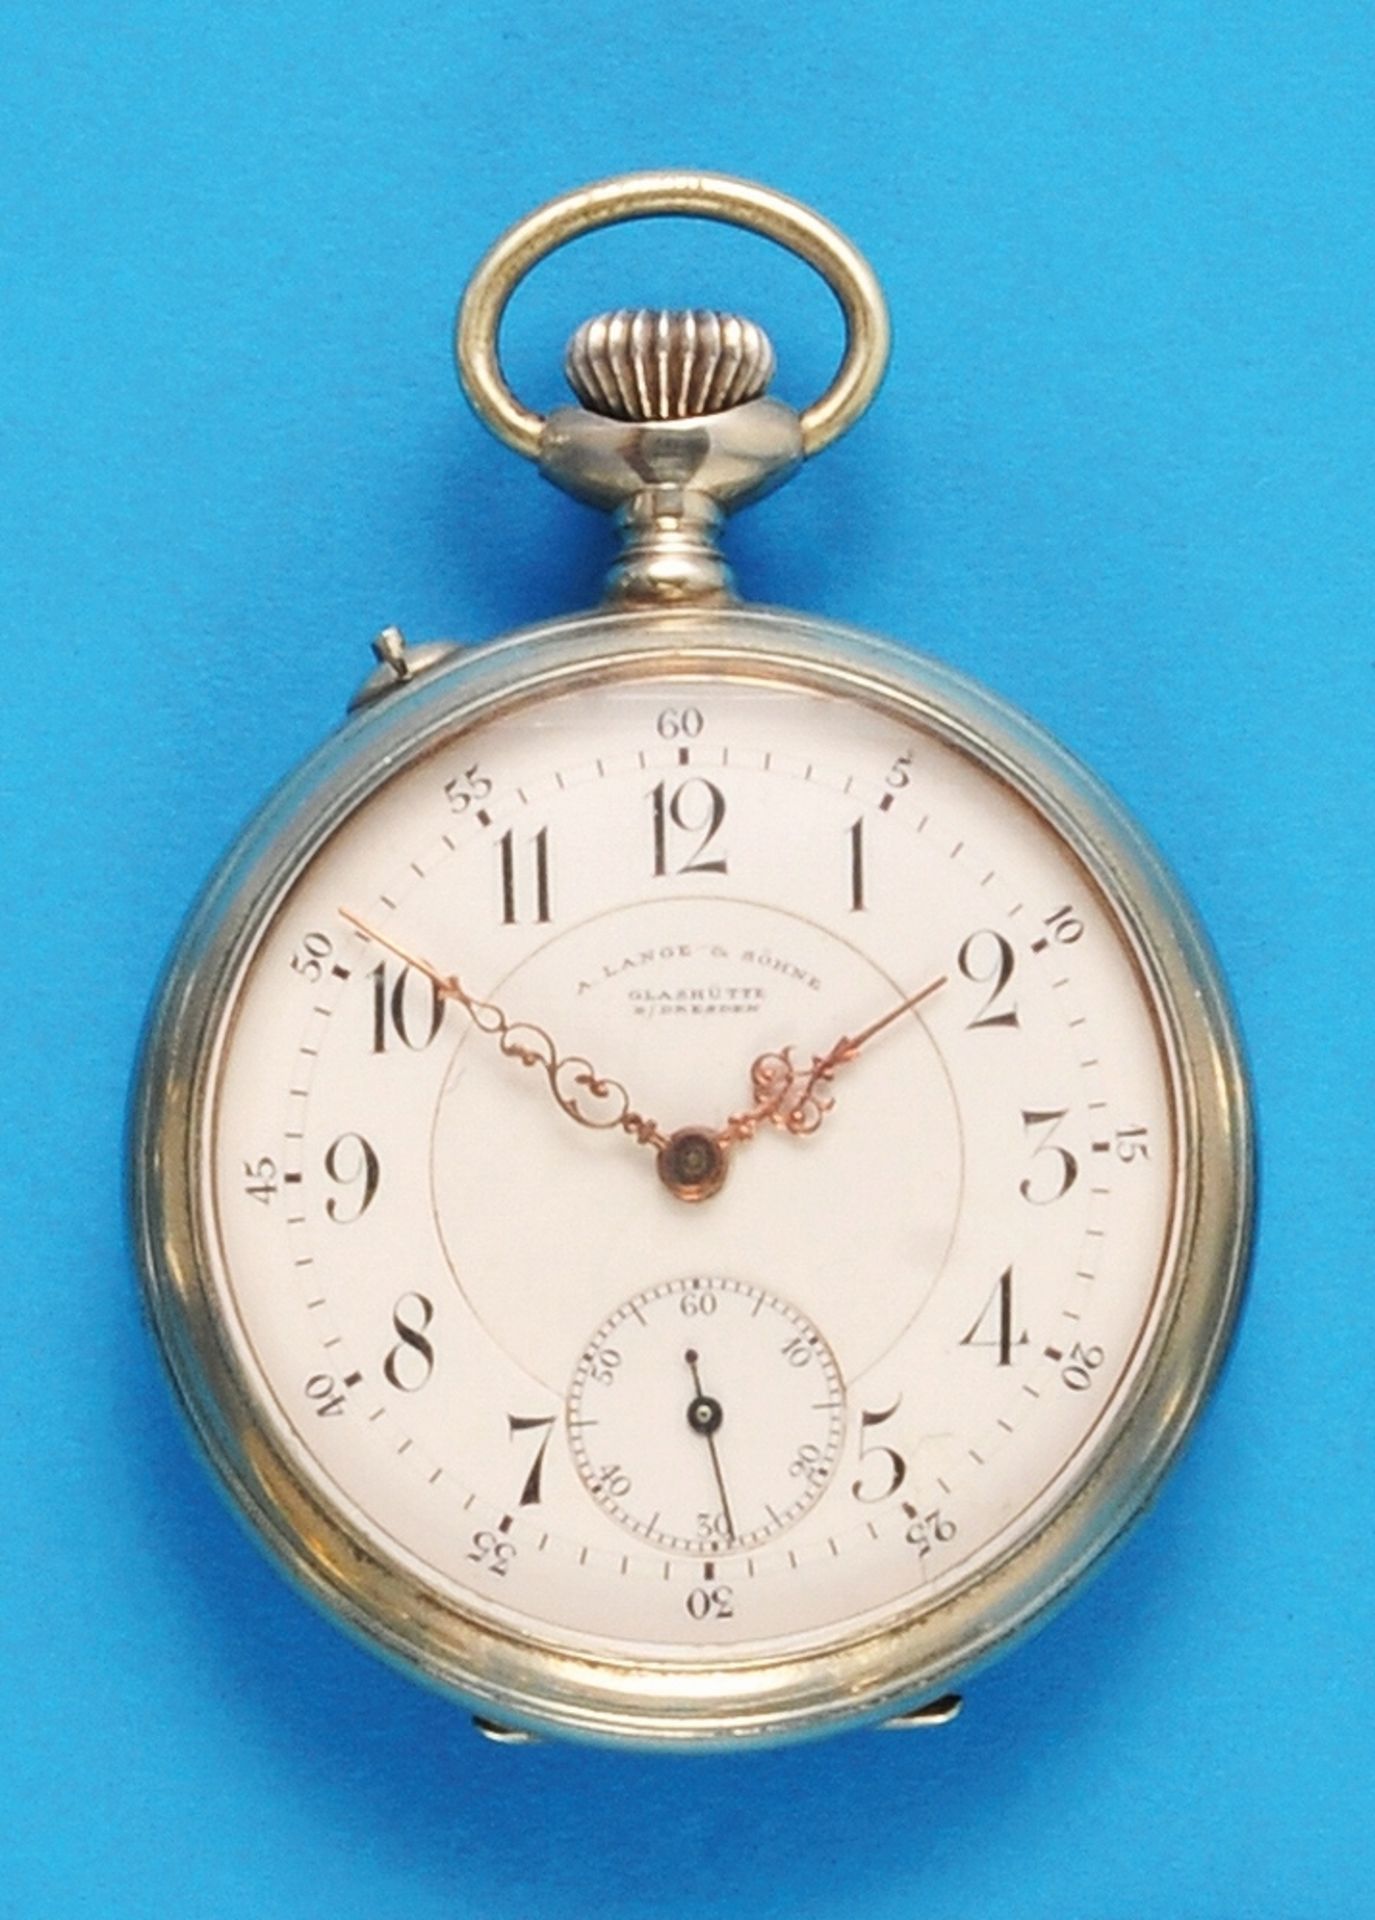 A.Lange & Söhne Glashütte b. Dresden, Pocket watch movement in nickel case - Bild 2 aus 2